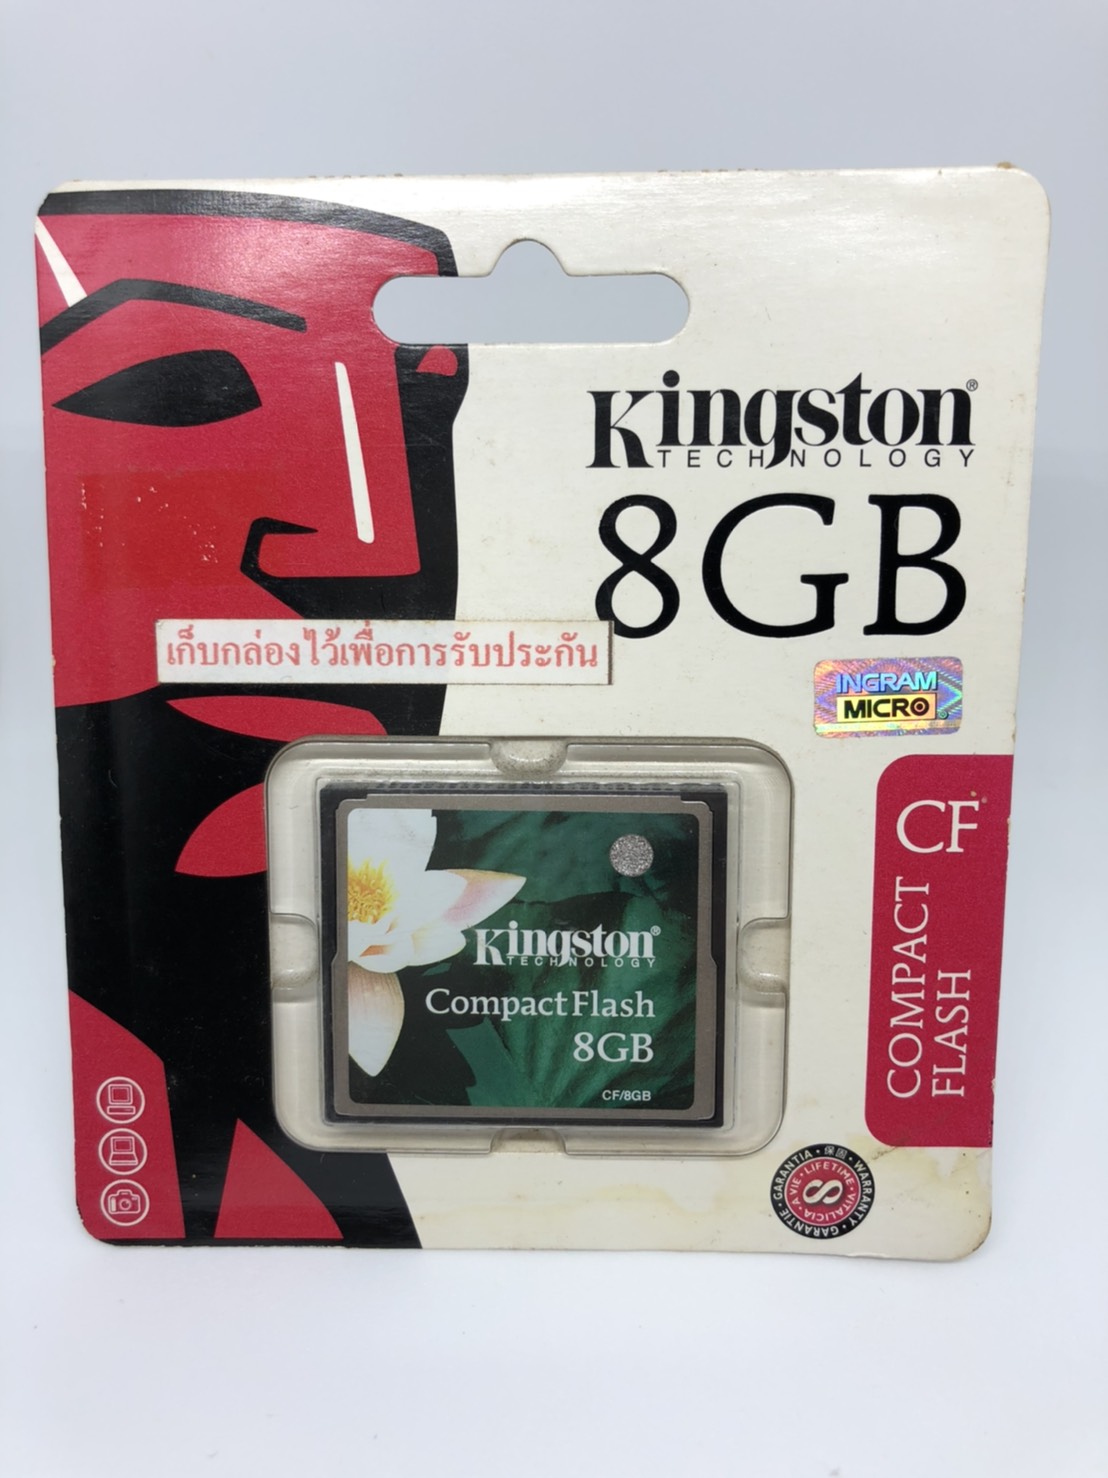 KINGSTON CompactFlash CF Card 8GB อุปกรณ์รองรับการ์ดหน่วยความจำ สำหรับกล้องCF กล้องระดับกลาง กล้องวีดีโอ เมมโมรี่ การ์ด  รับประกันLifetime โดย IngramMicro